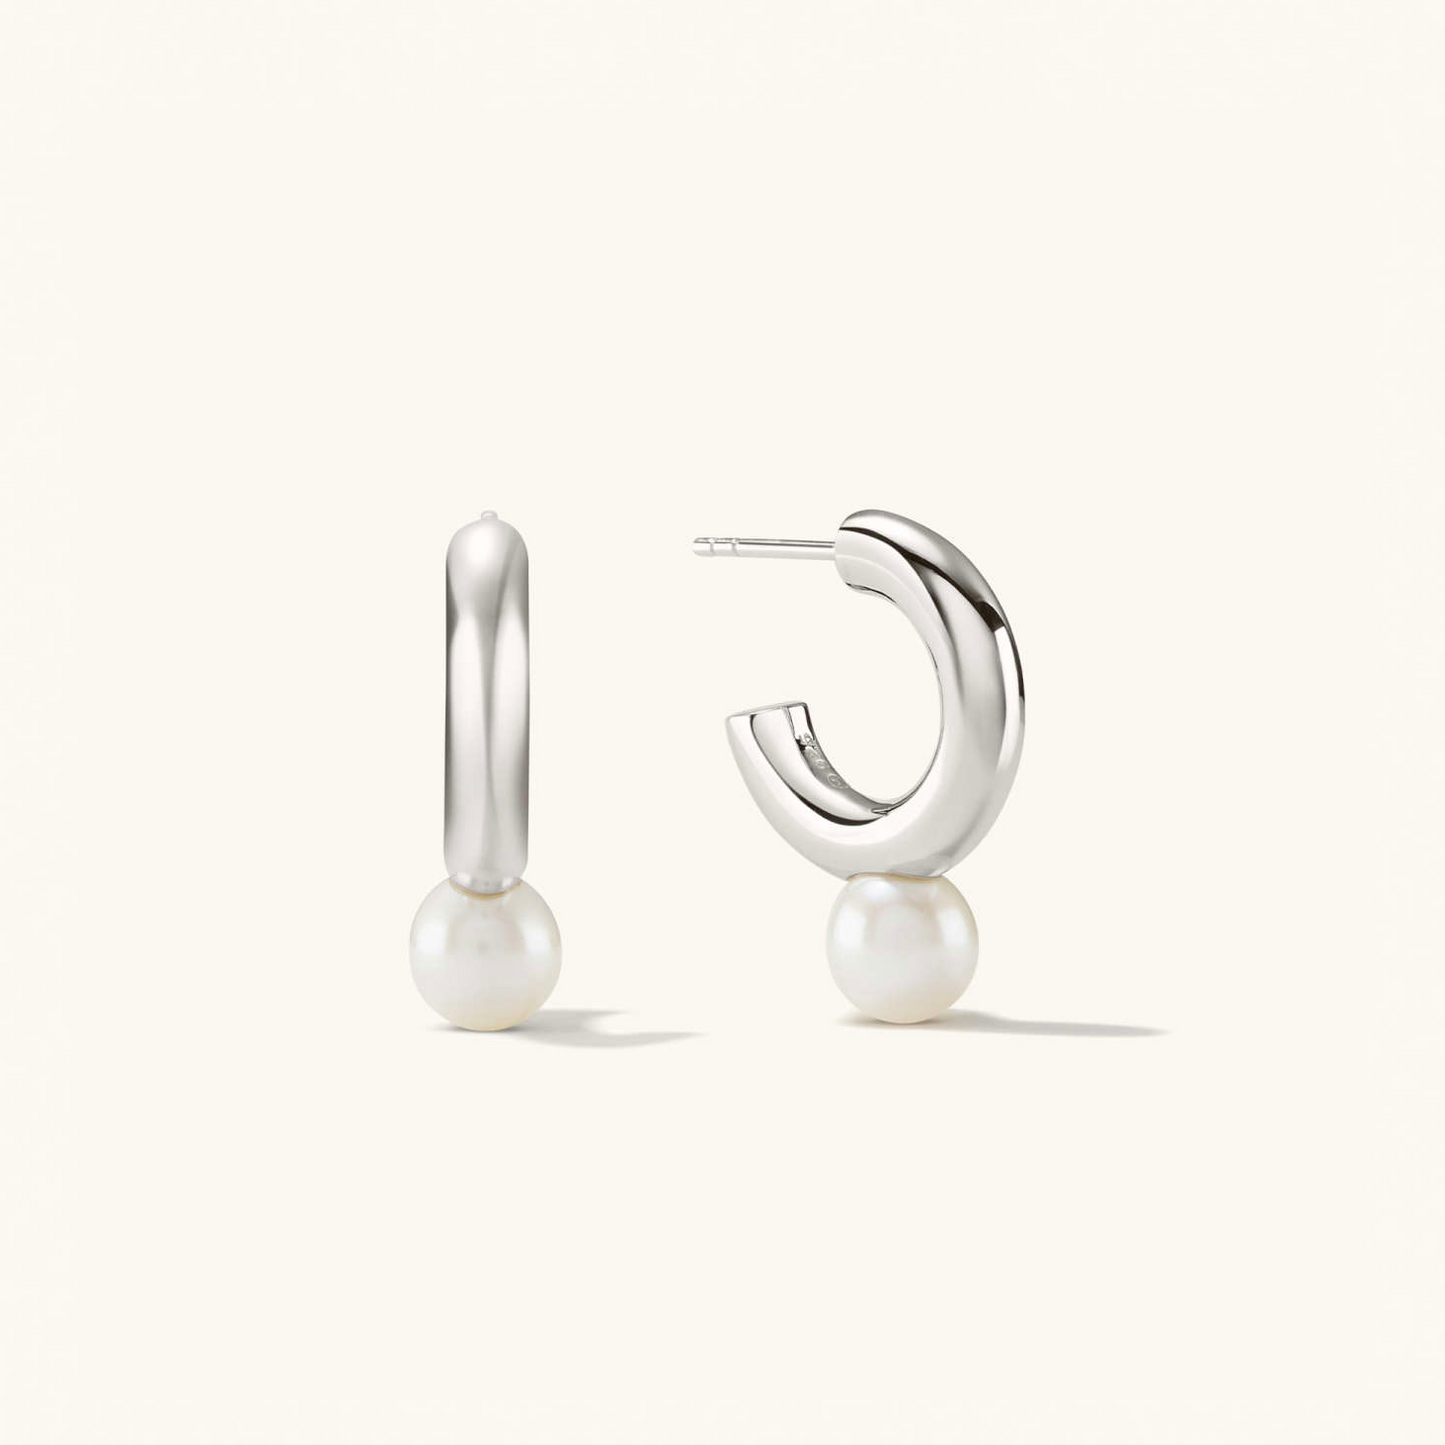 Dual Pearl 925 Sterling Silver Hoops Stud Earrings